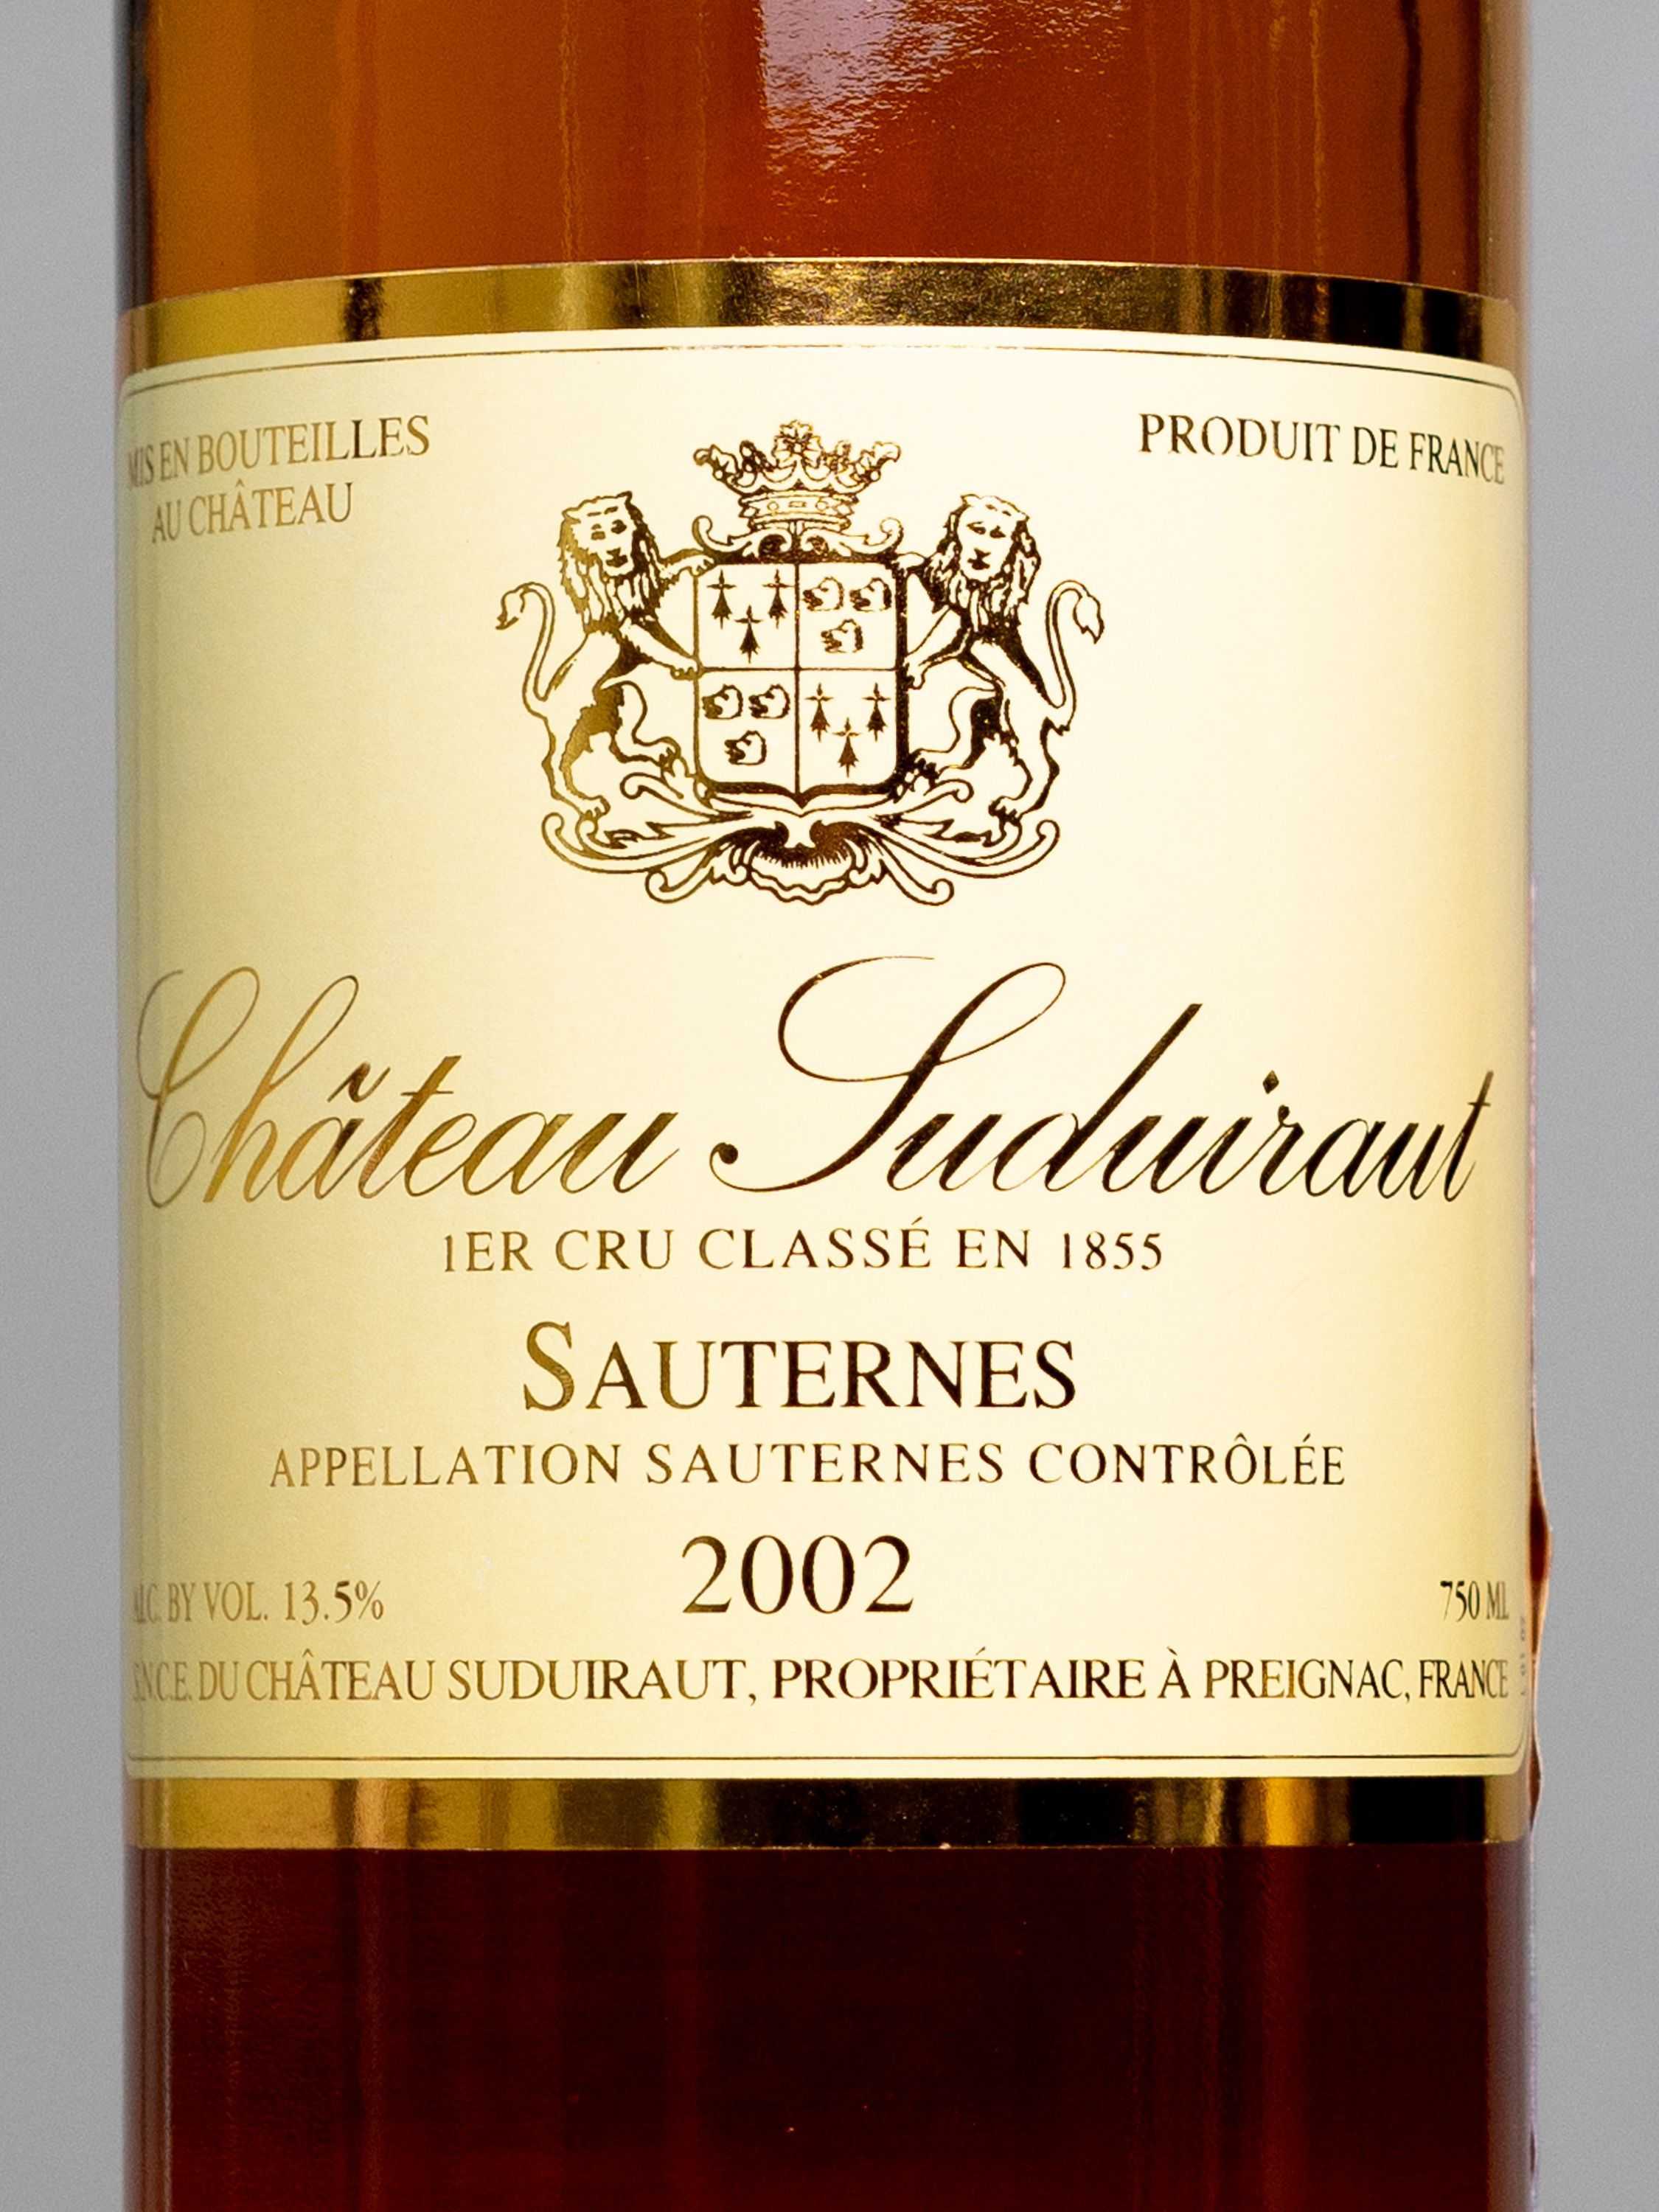 Сладкие белые вина сотерна (sauternes) в бордо - особенности виноделия